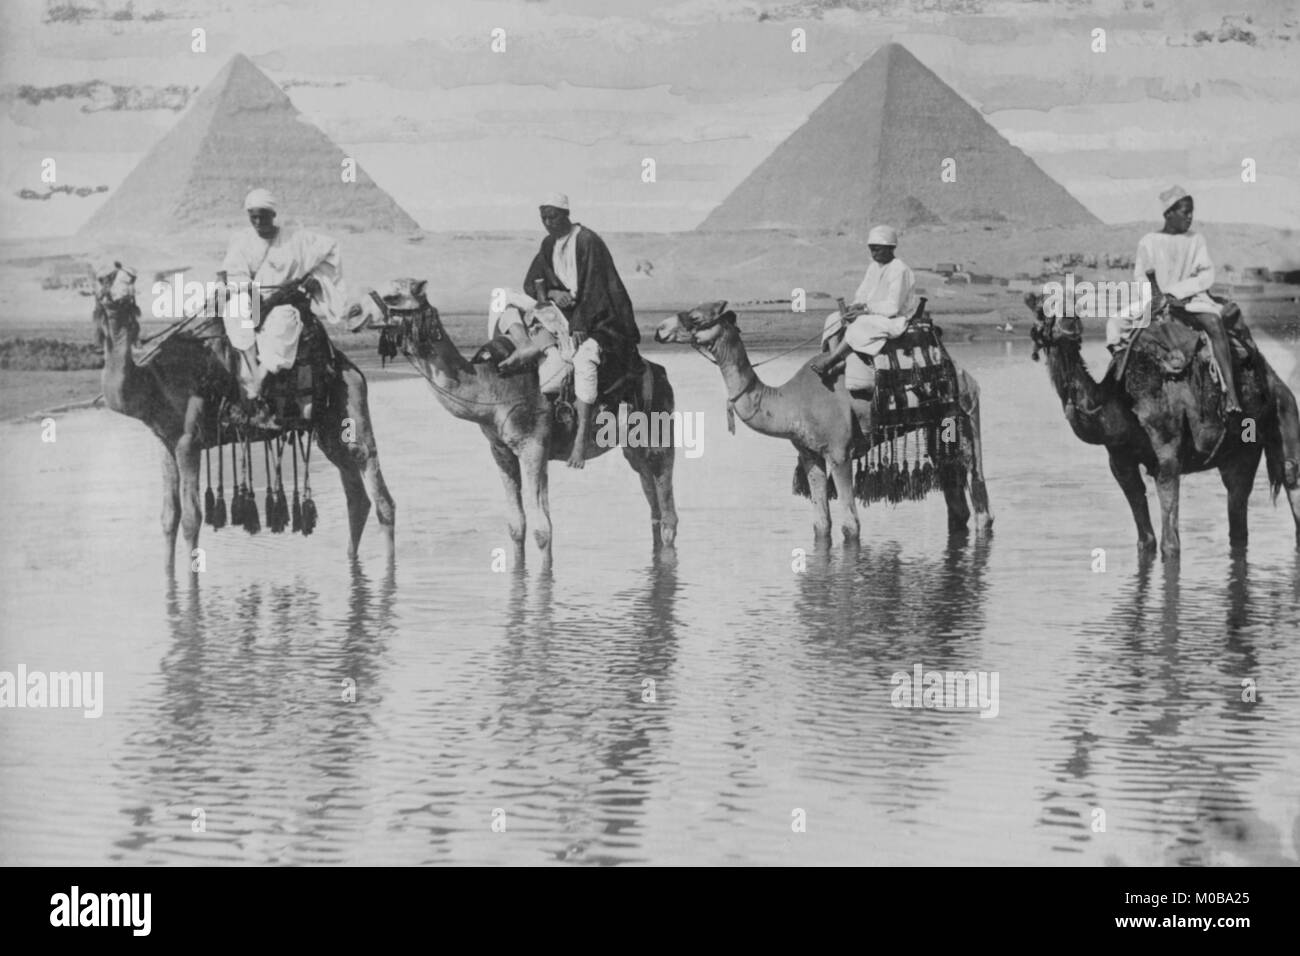 Kamele mit Einheimischen Mitfahrer an Bord stand in reflektierenden Hochwasser mit einer Kulisse der Pyramiden von Gizeh in Ägypten Stockfoto